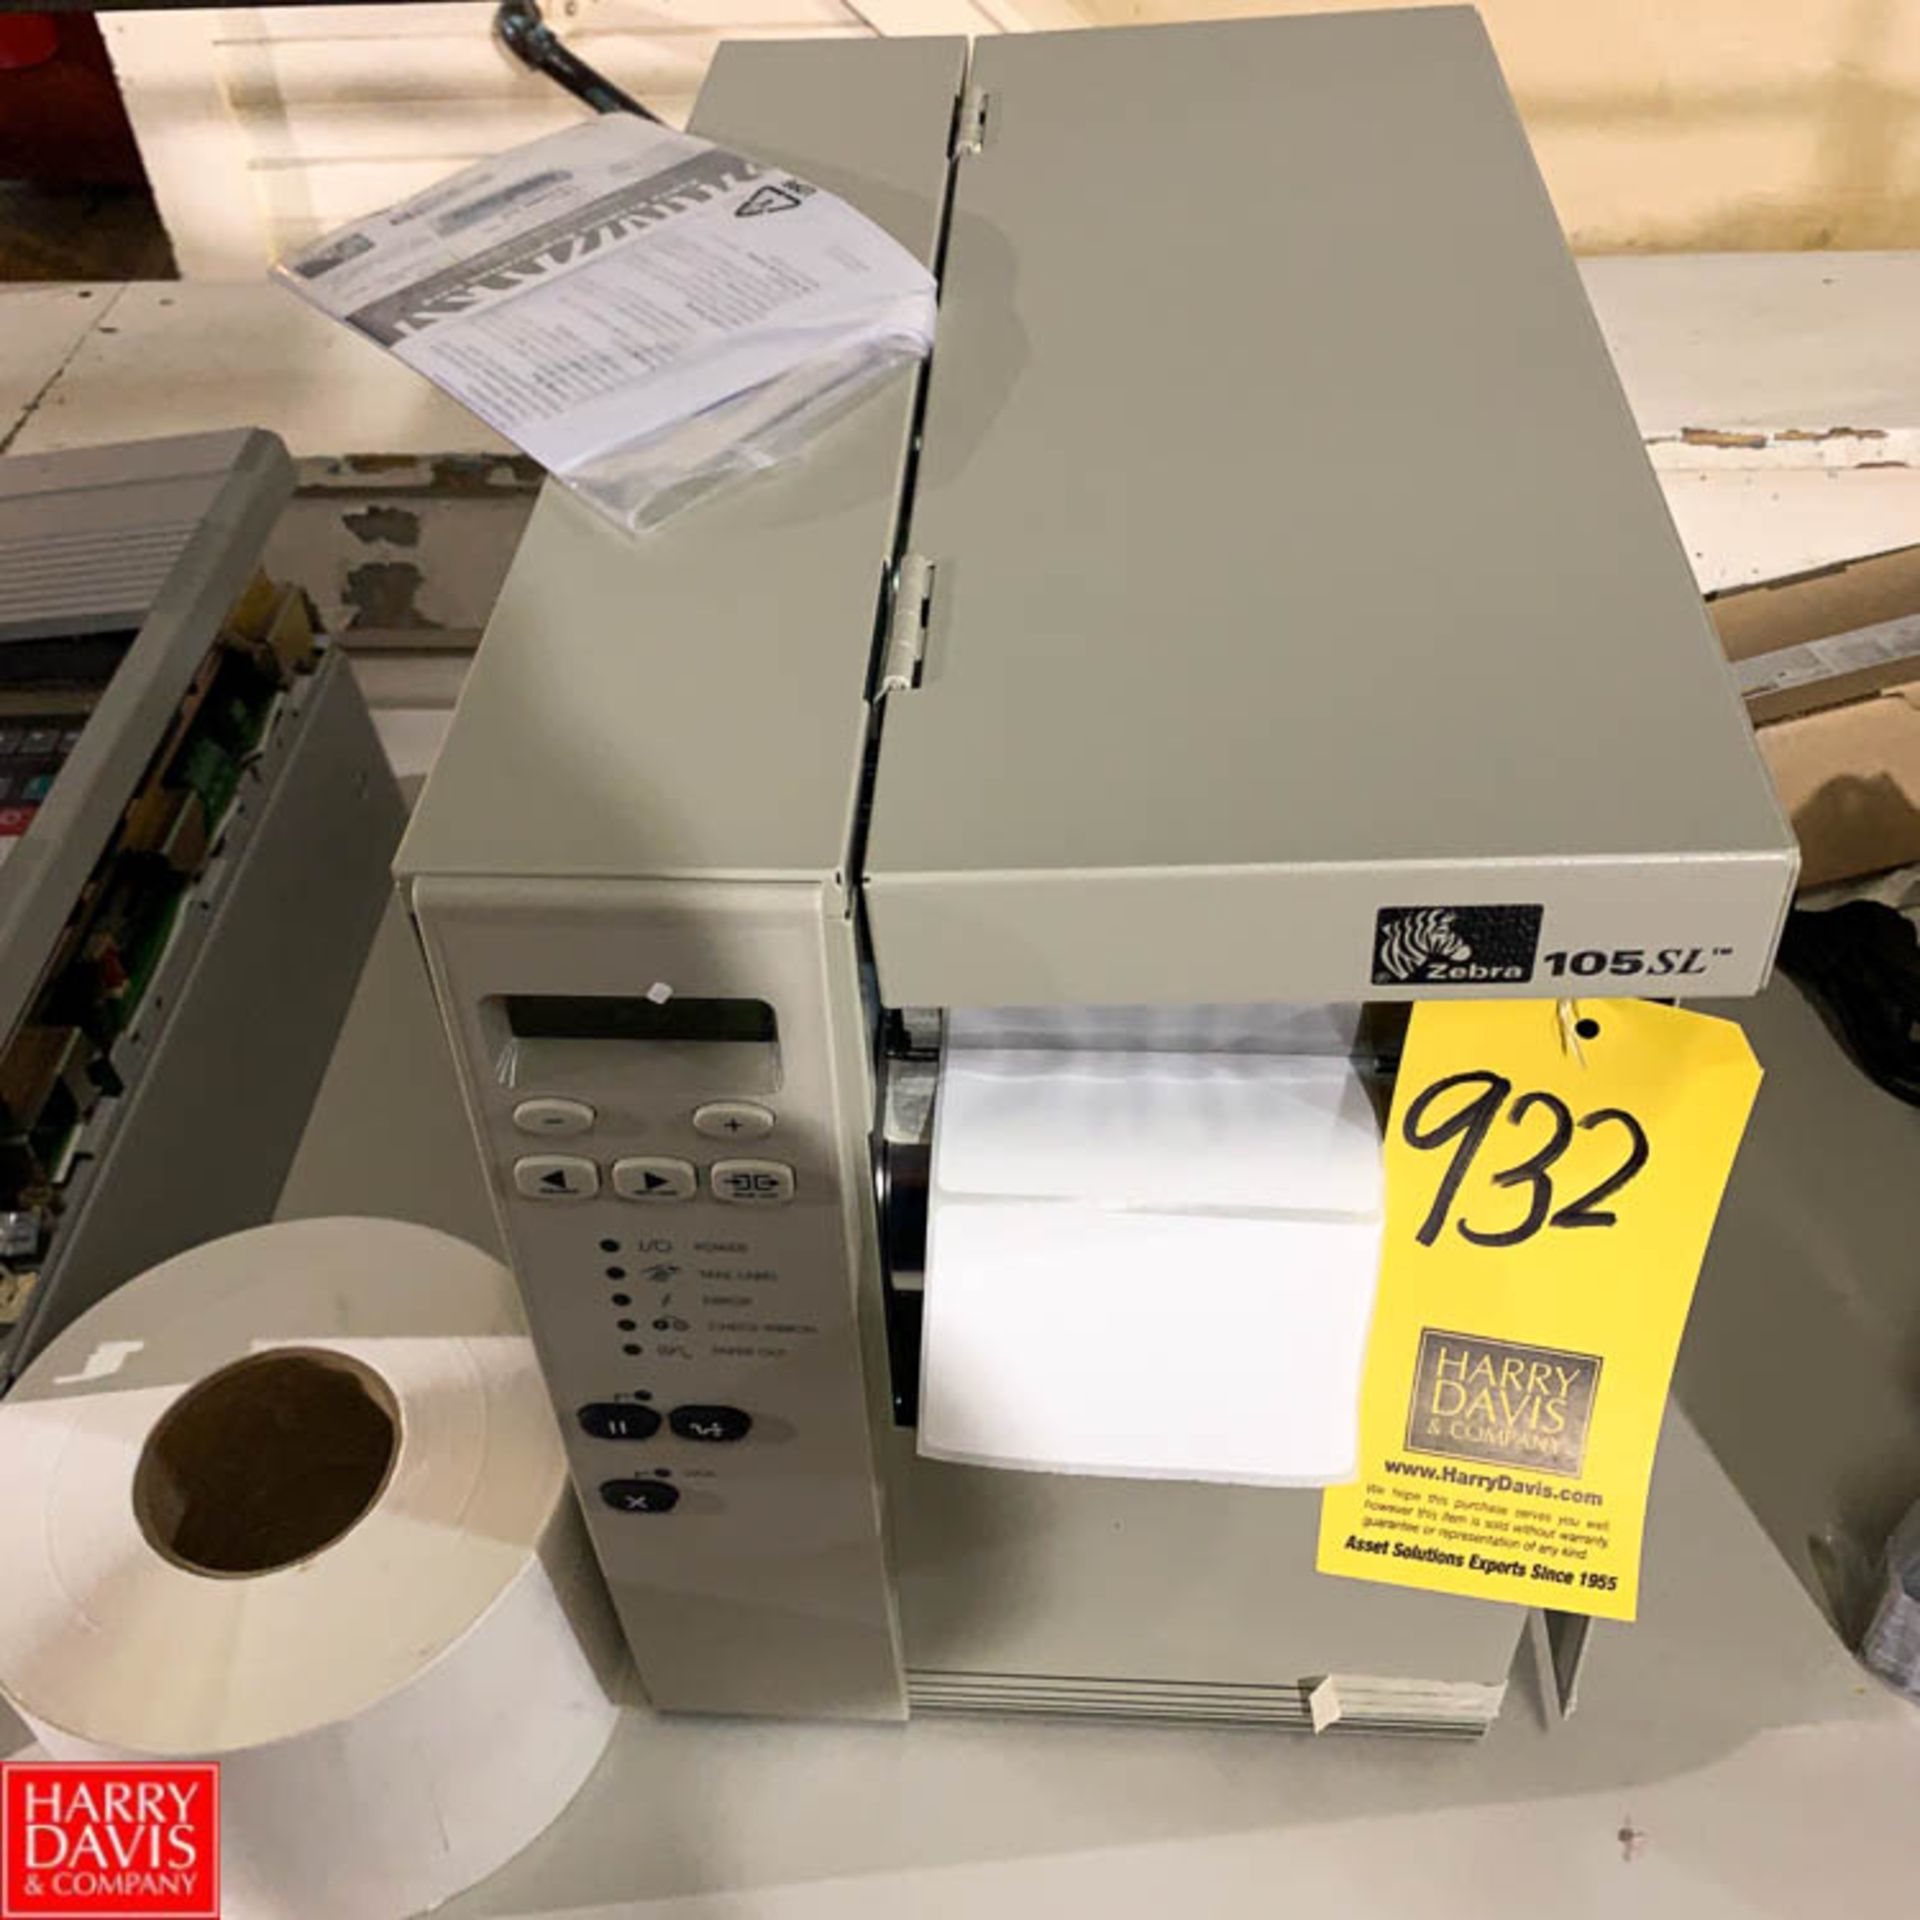 NEW Zebra Label Printer Model 105S - Rigging Fee: $ 25